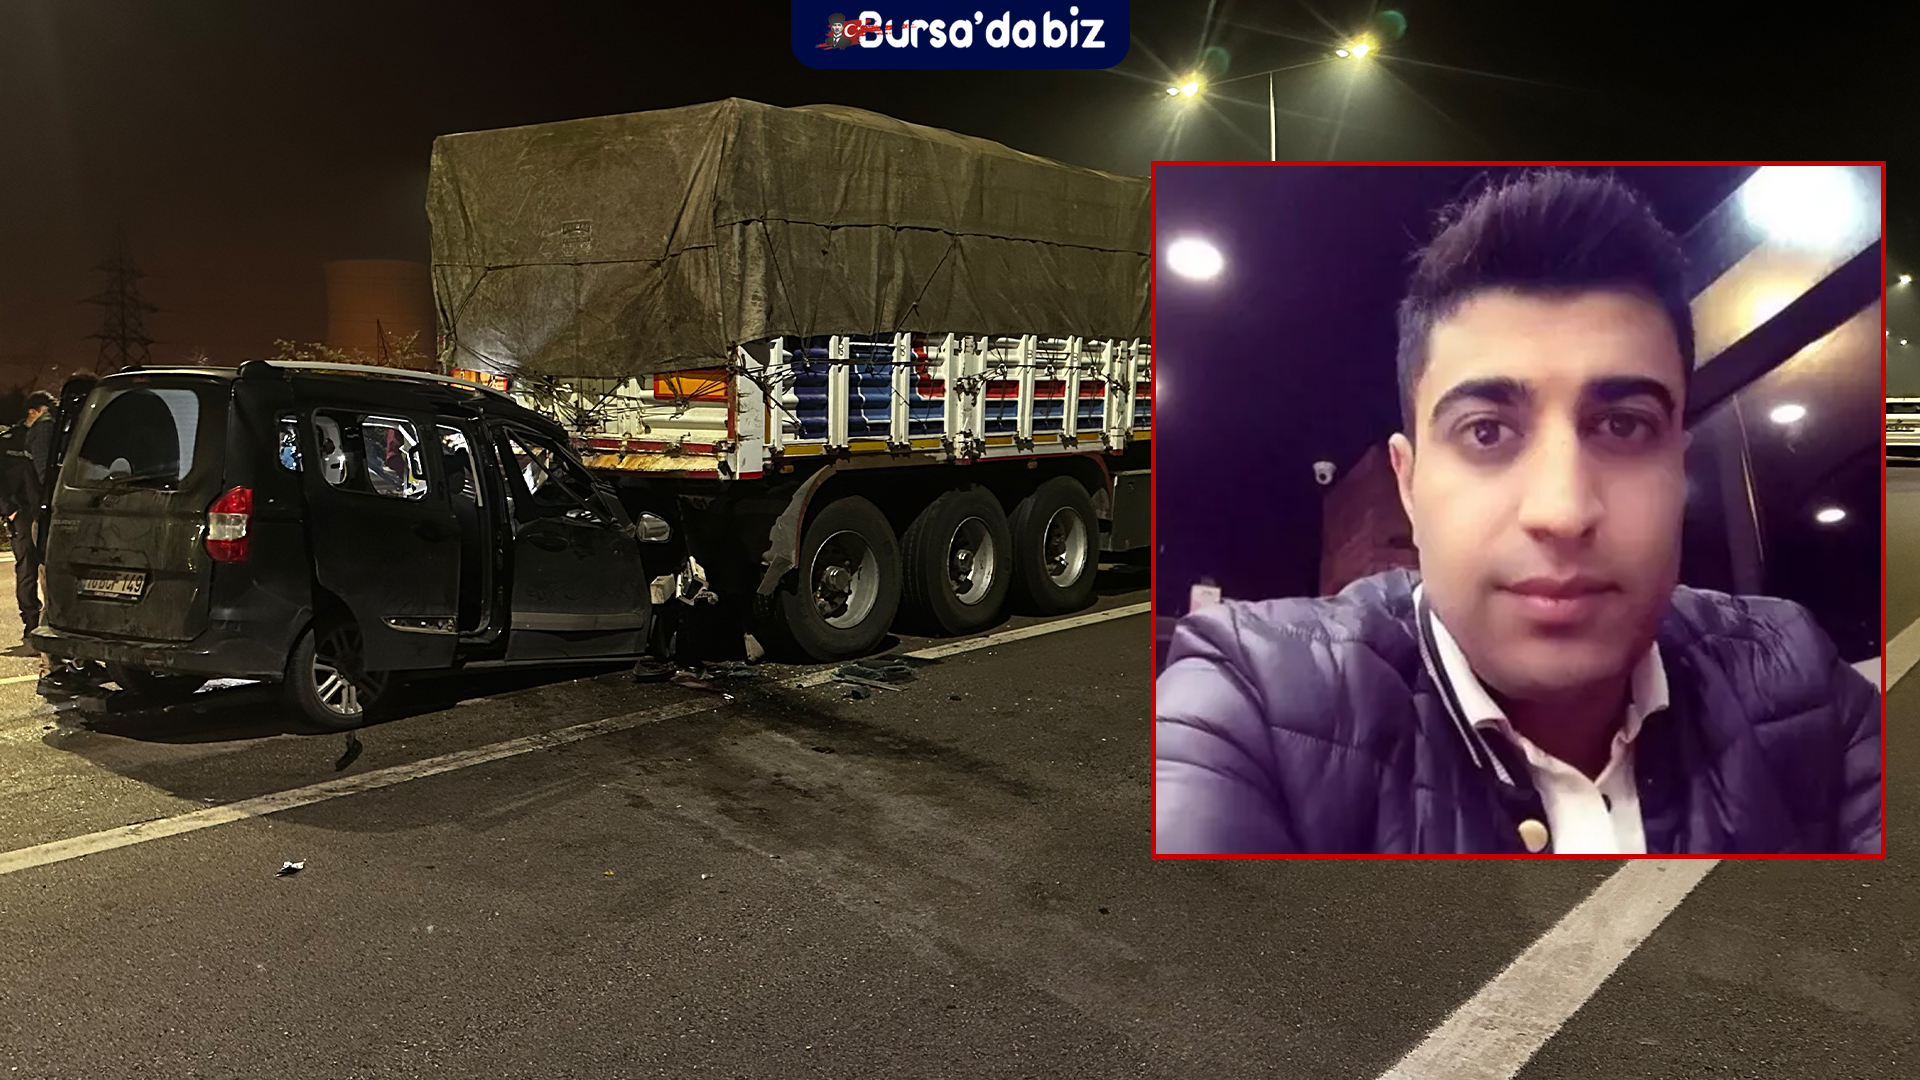 Bursa'da Hafif Ticari Araç Tıra Arkadan Çarptı 1 Ölü